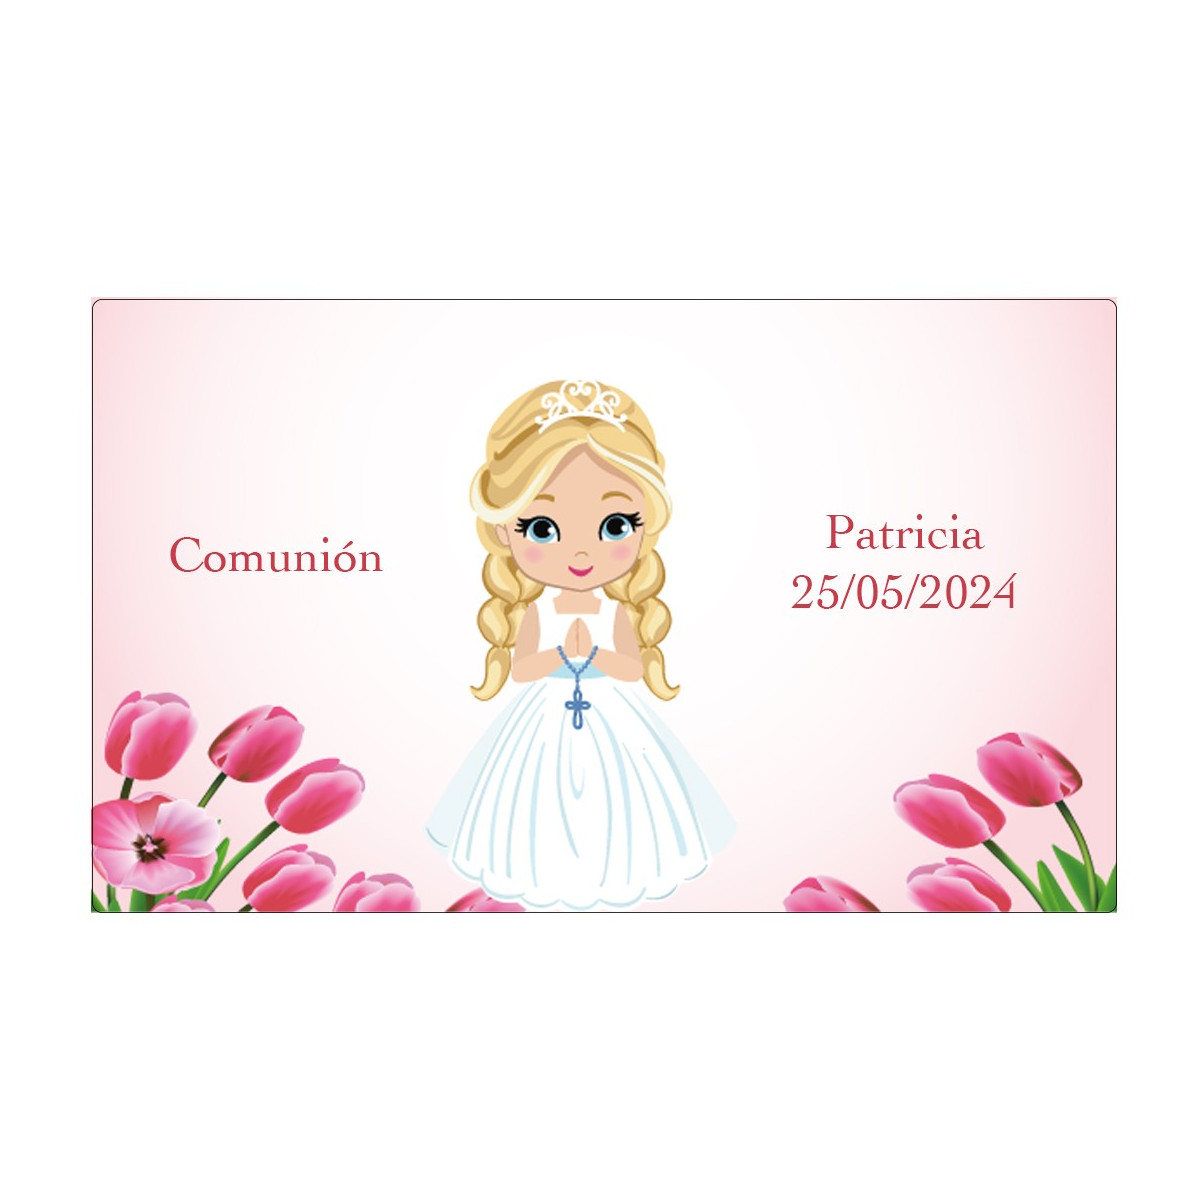 Adesivo de comunhão personalizado para menina com nome e data